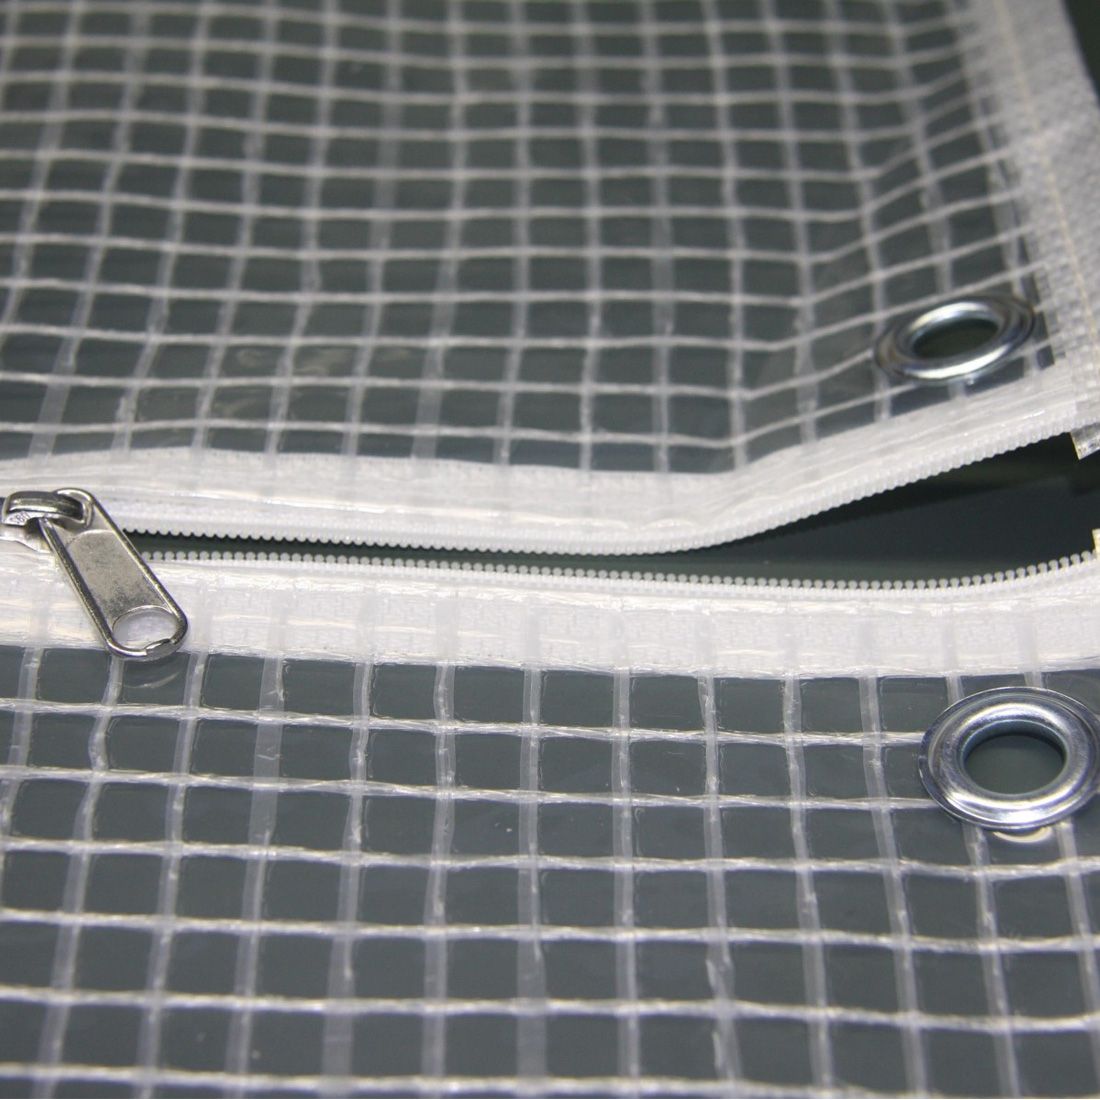 Heinemeyer Schutzhülle 120cm für runde Tische, Poly-Gitter-Folie transparent